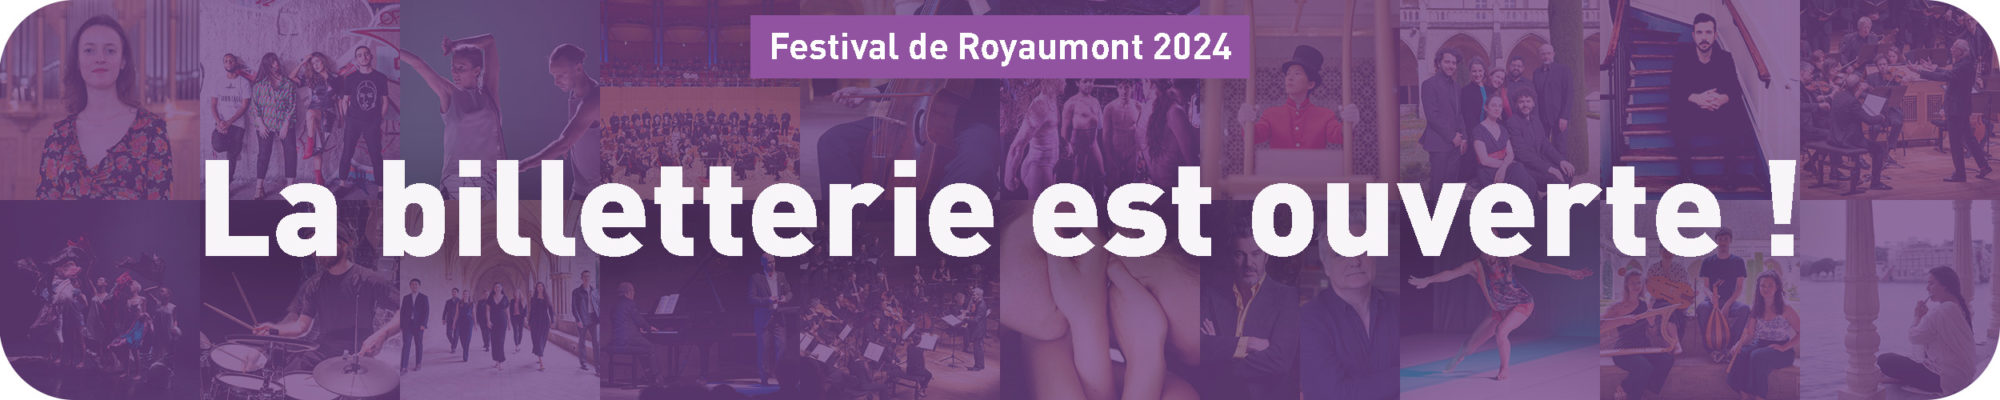 La billetterie du Festival de Royaumont 2024 est ouverte